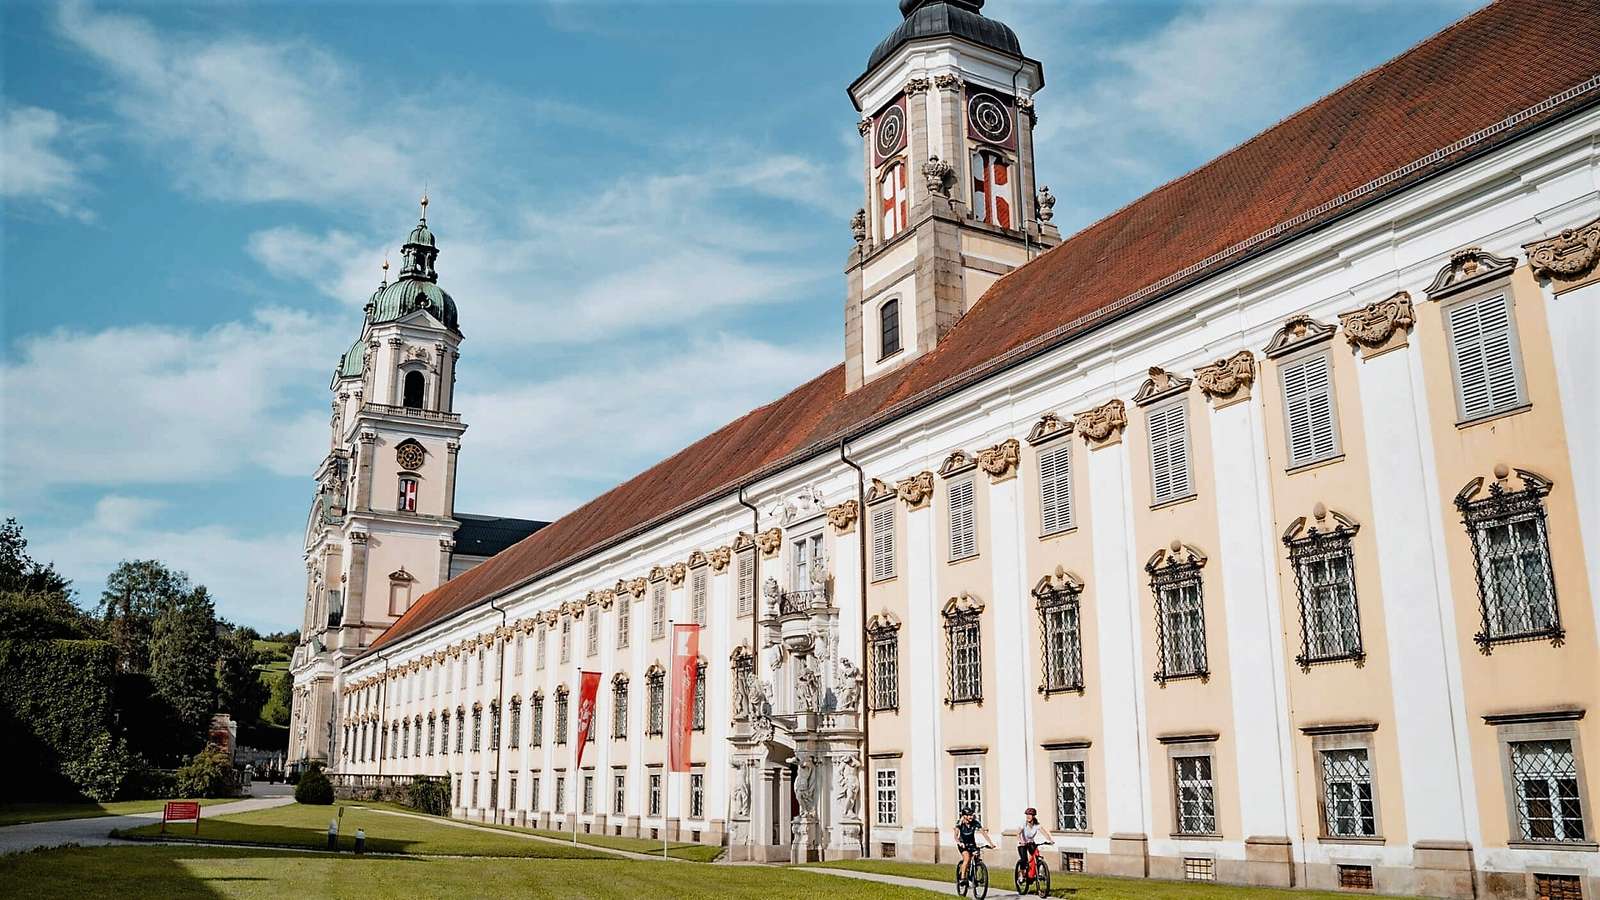 Аббатство Святого Флориана в Верхней Австрии пазл онлайн